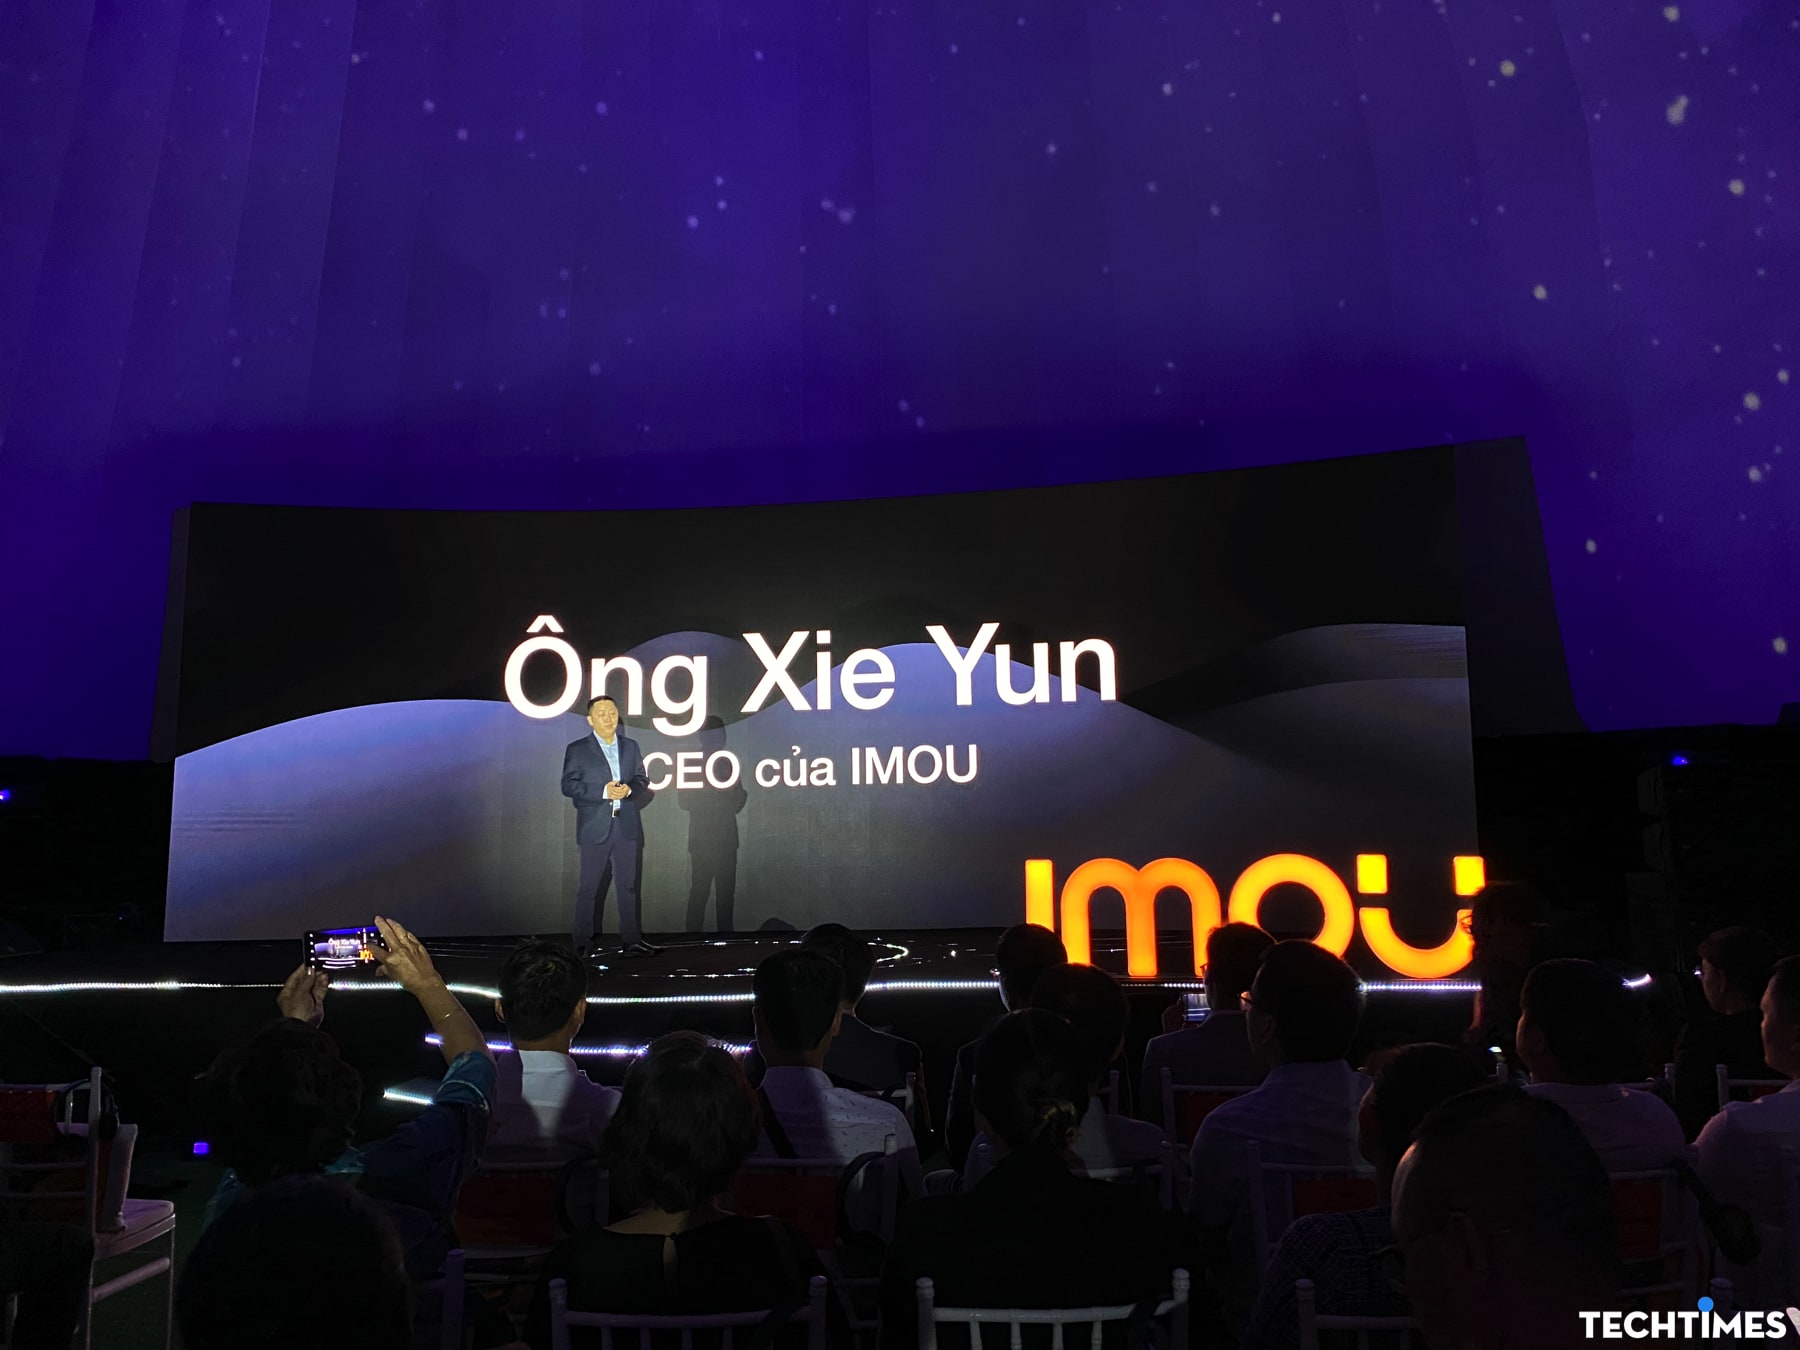 Giám đốc Điều hành của IMOU - ông Xie Yun chia sẻ tầm nhìn của công ty tại sự kiện.